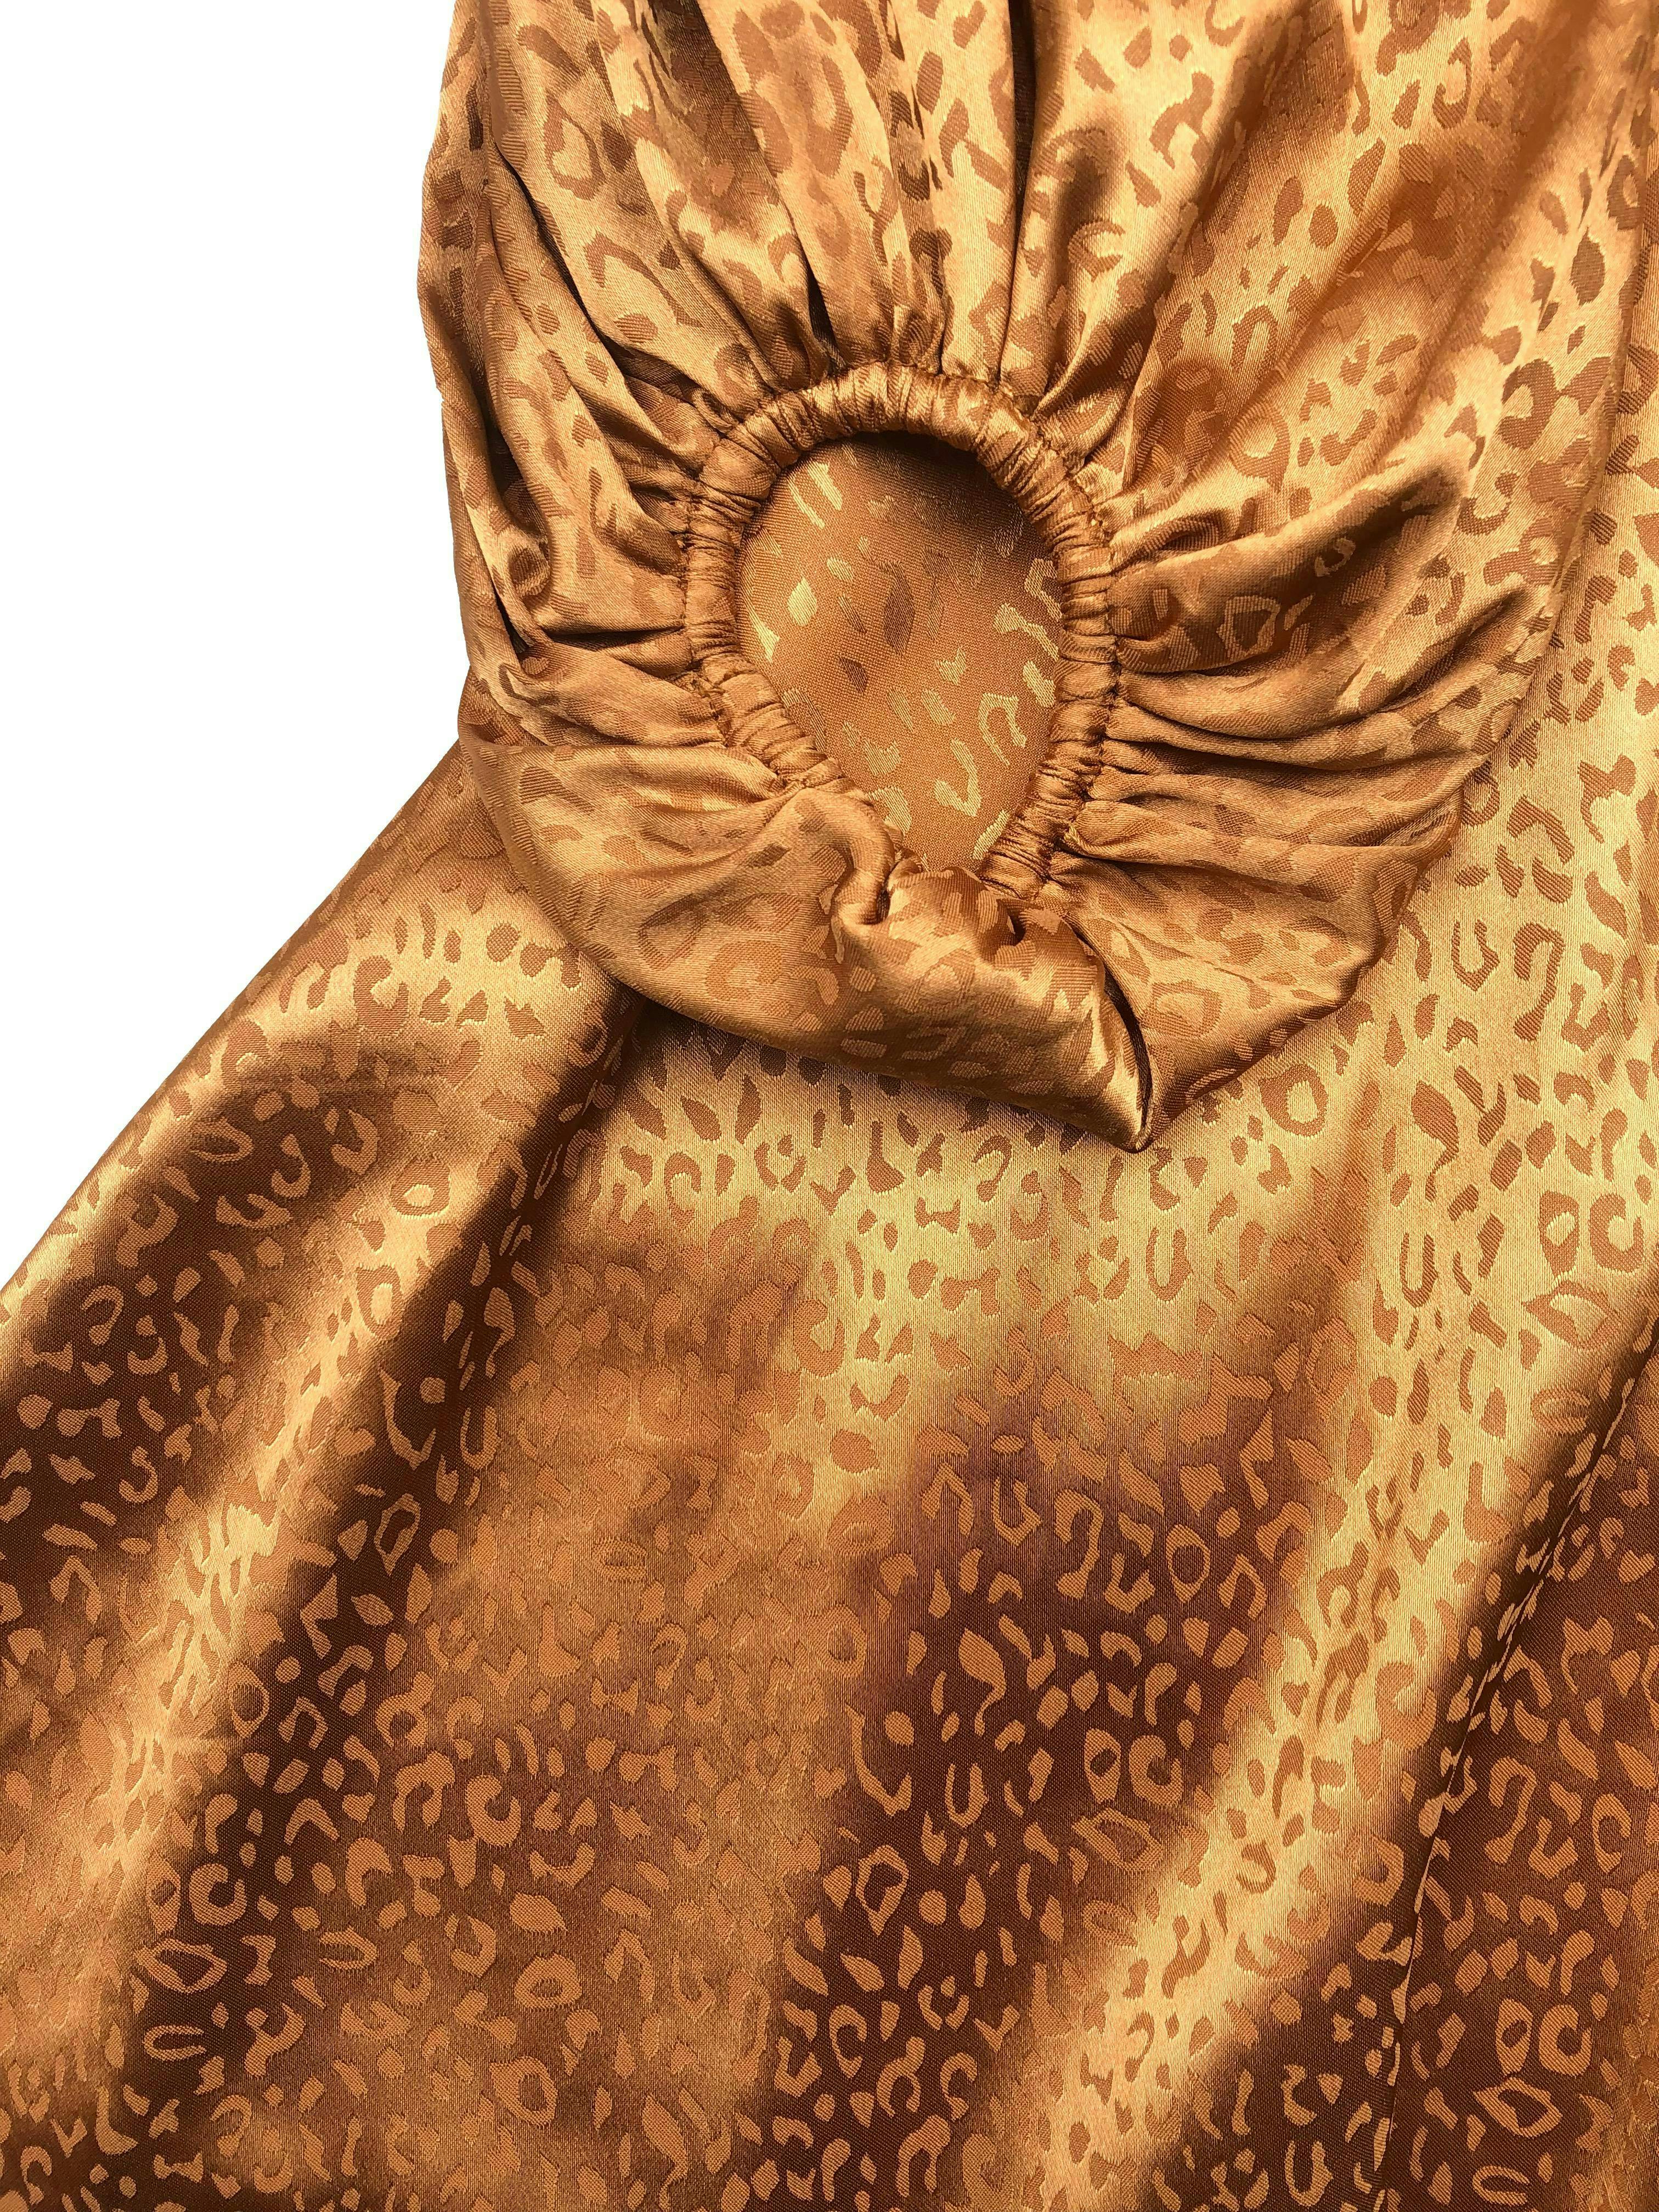 Vestido Bohem cobre satinado con animal print al tono, cierre en espalda, falda con vuelo, mangas abullonadas. Busto 90cm Largo 80cm